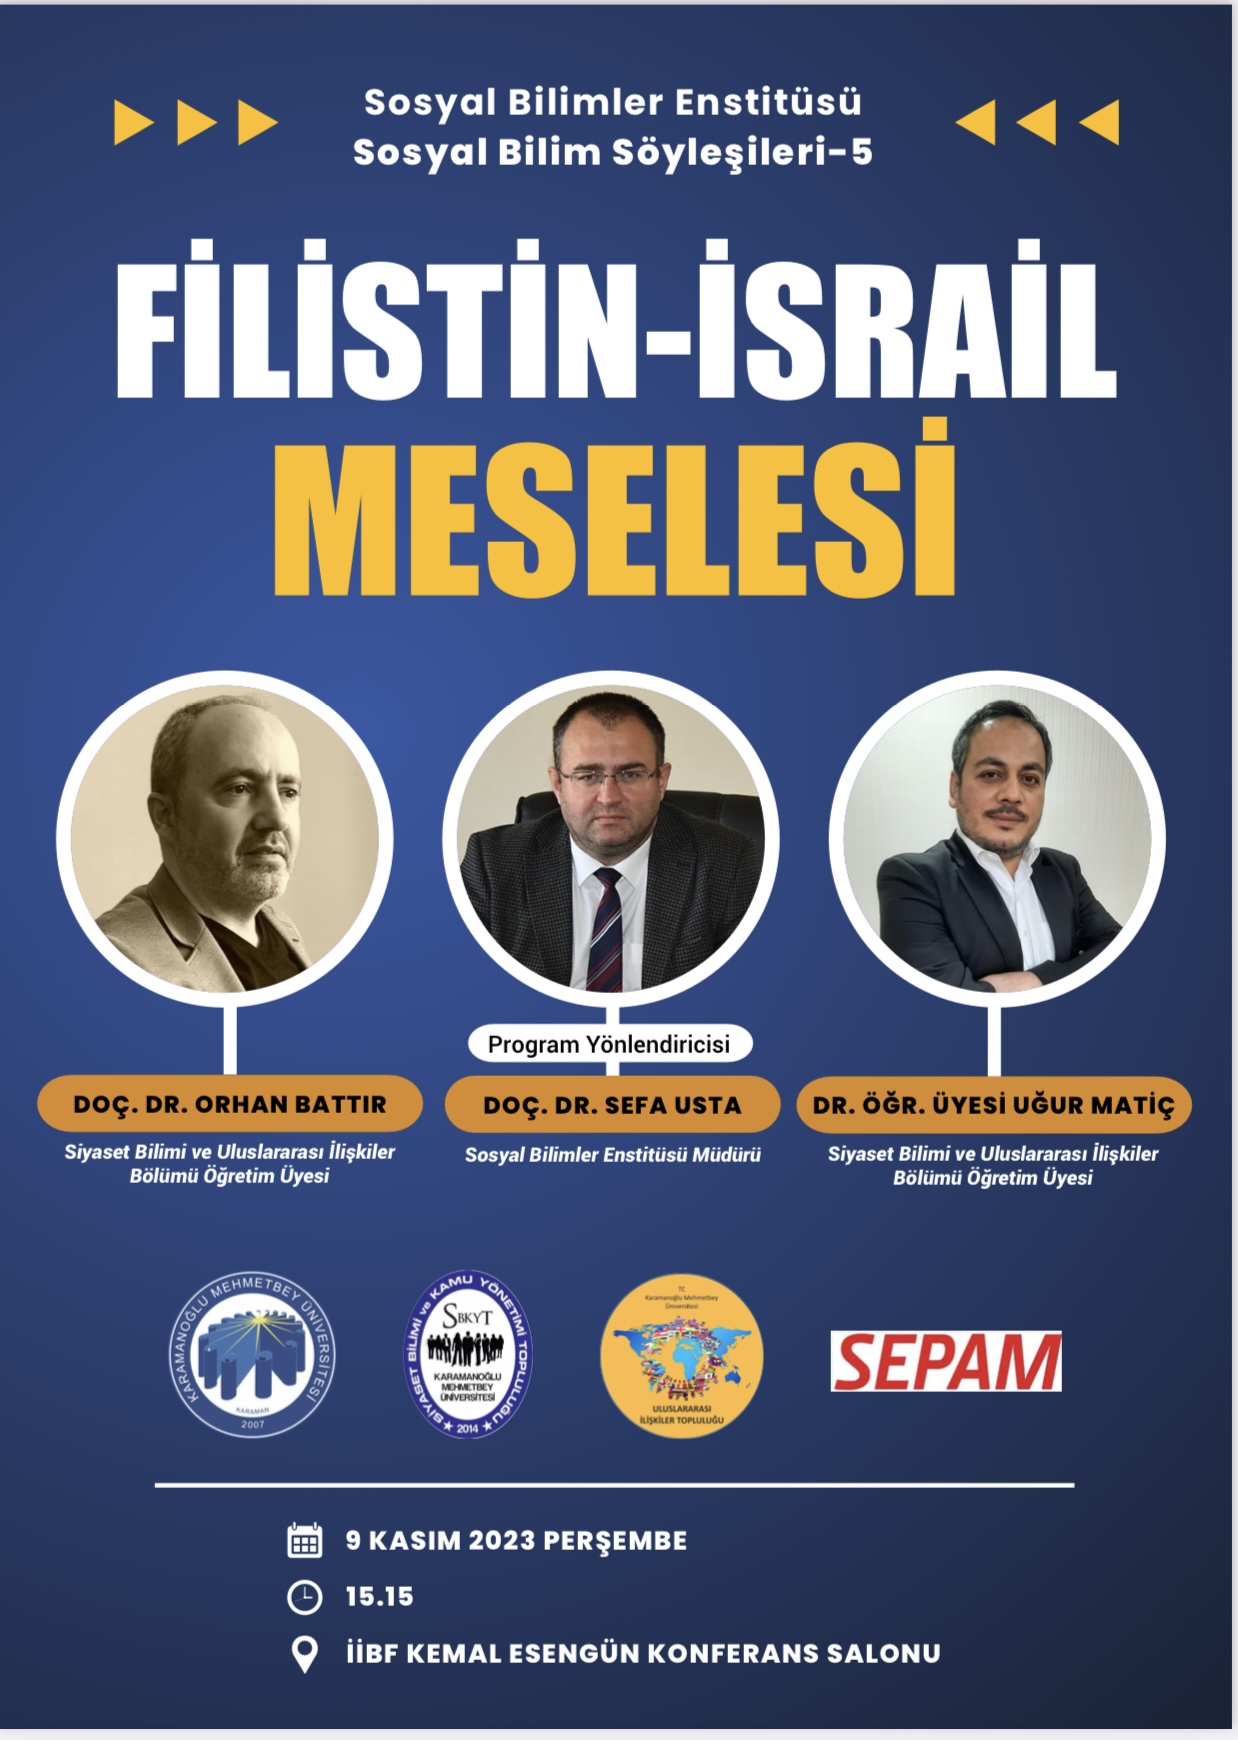 Filistin-İsrail Meselesi konulu akademik panel gerçekleştirilmiştir.